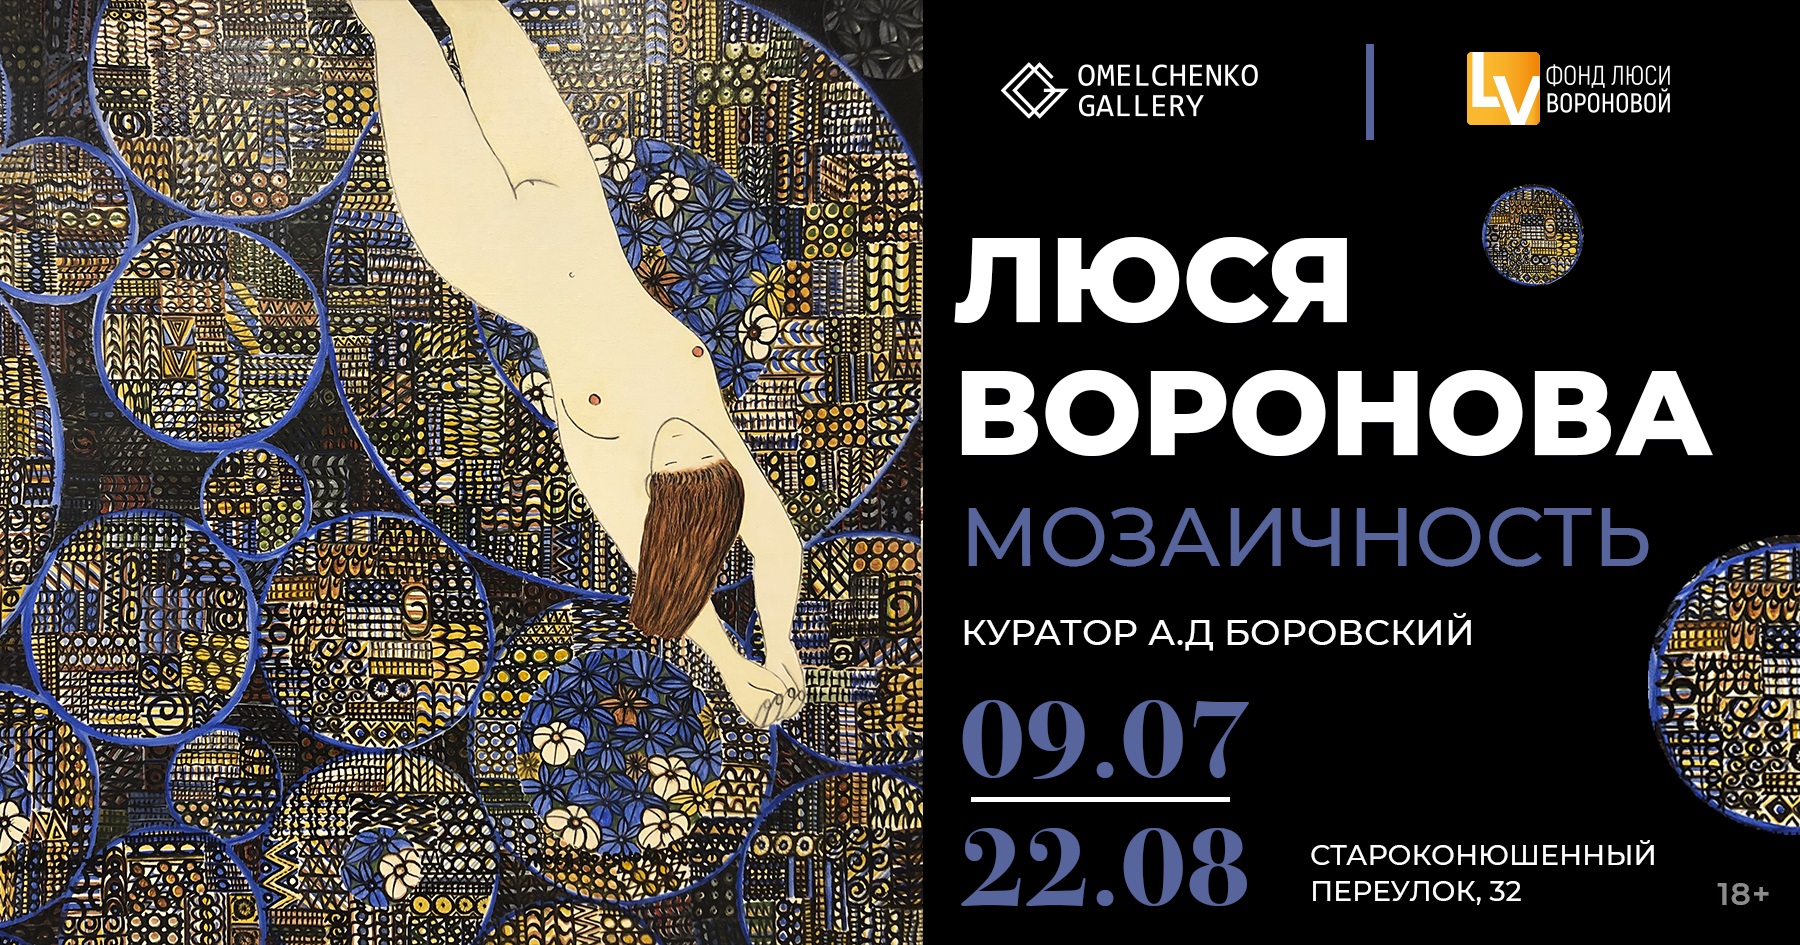 Выставка «Люся Воронова. Мозаичность» в галерее Омельченко. 9 июля - 22 августа.